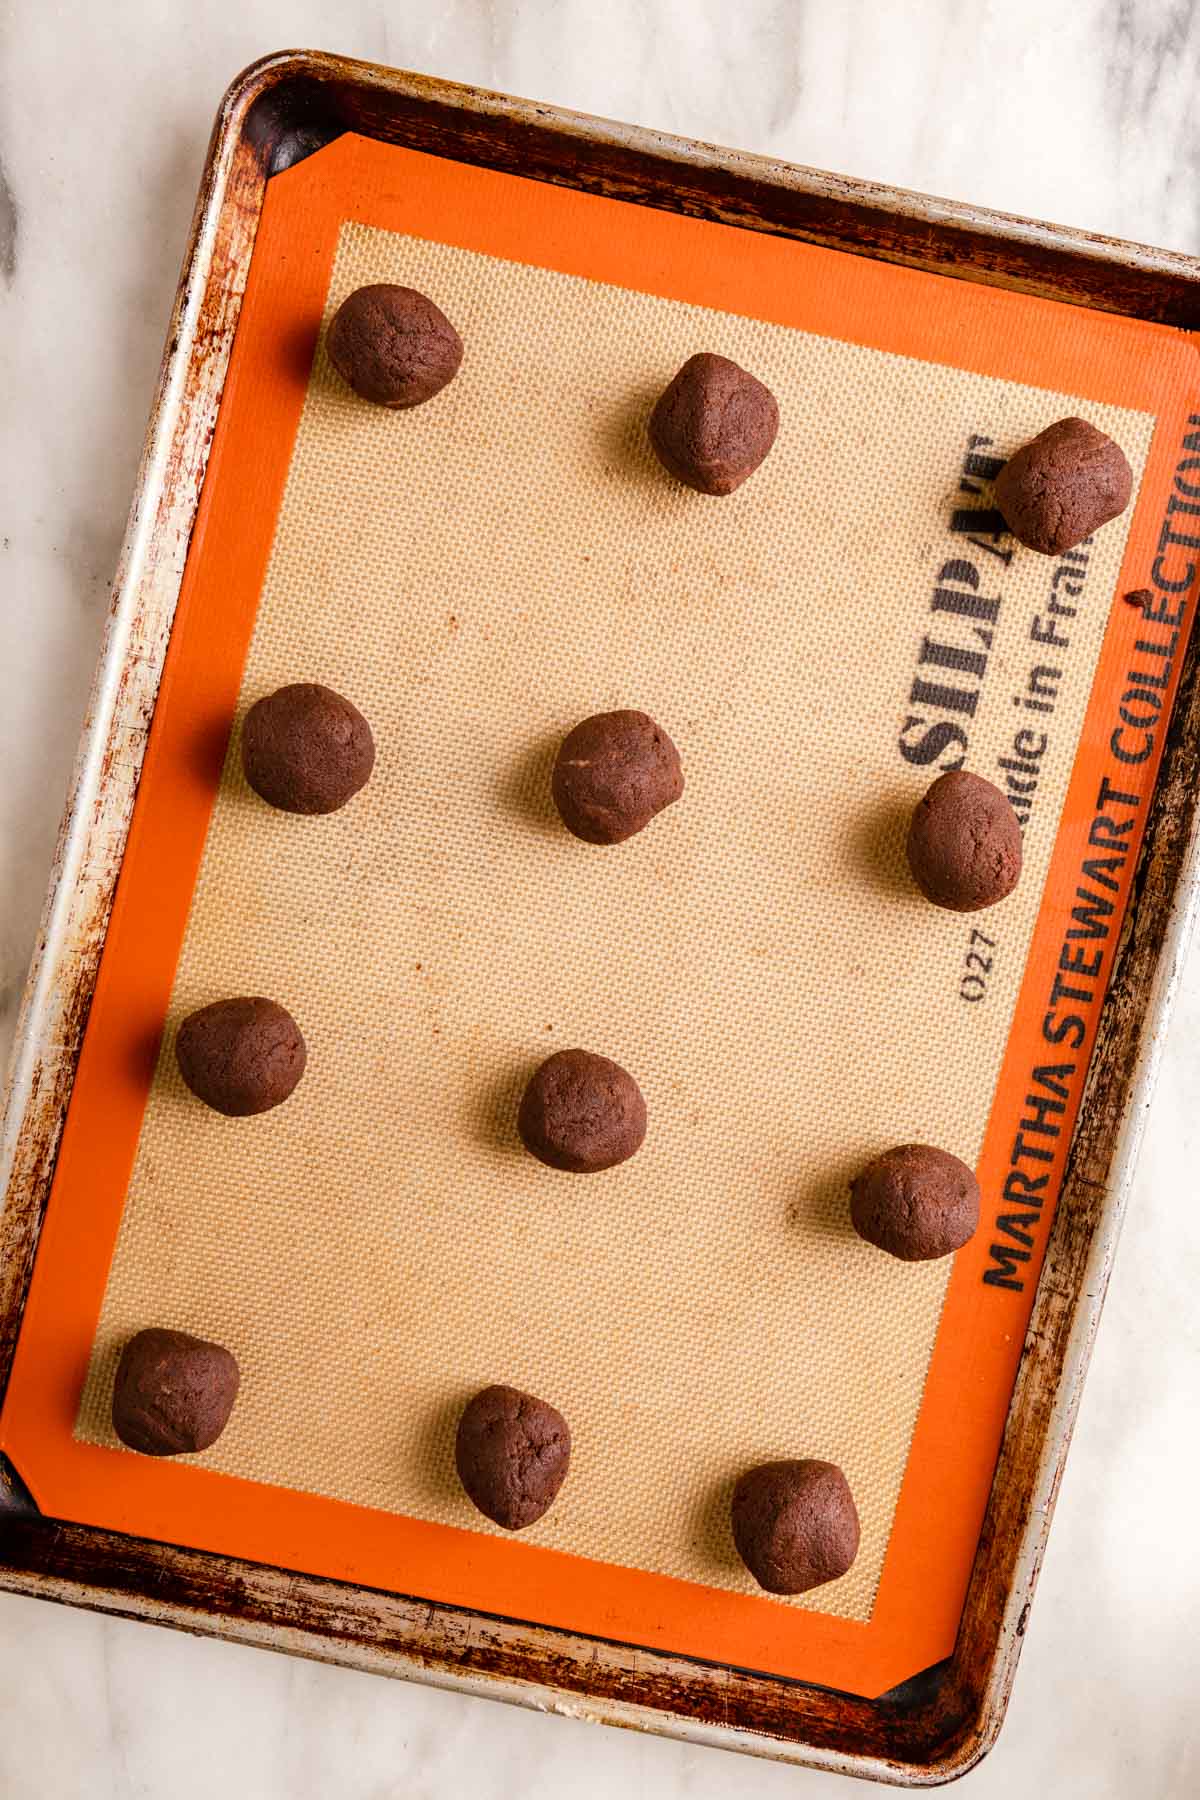 Peppermint Bark Cookies dough balls on baking sheet before baking